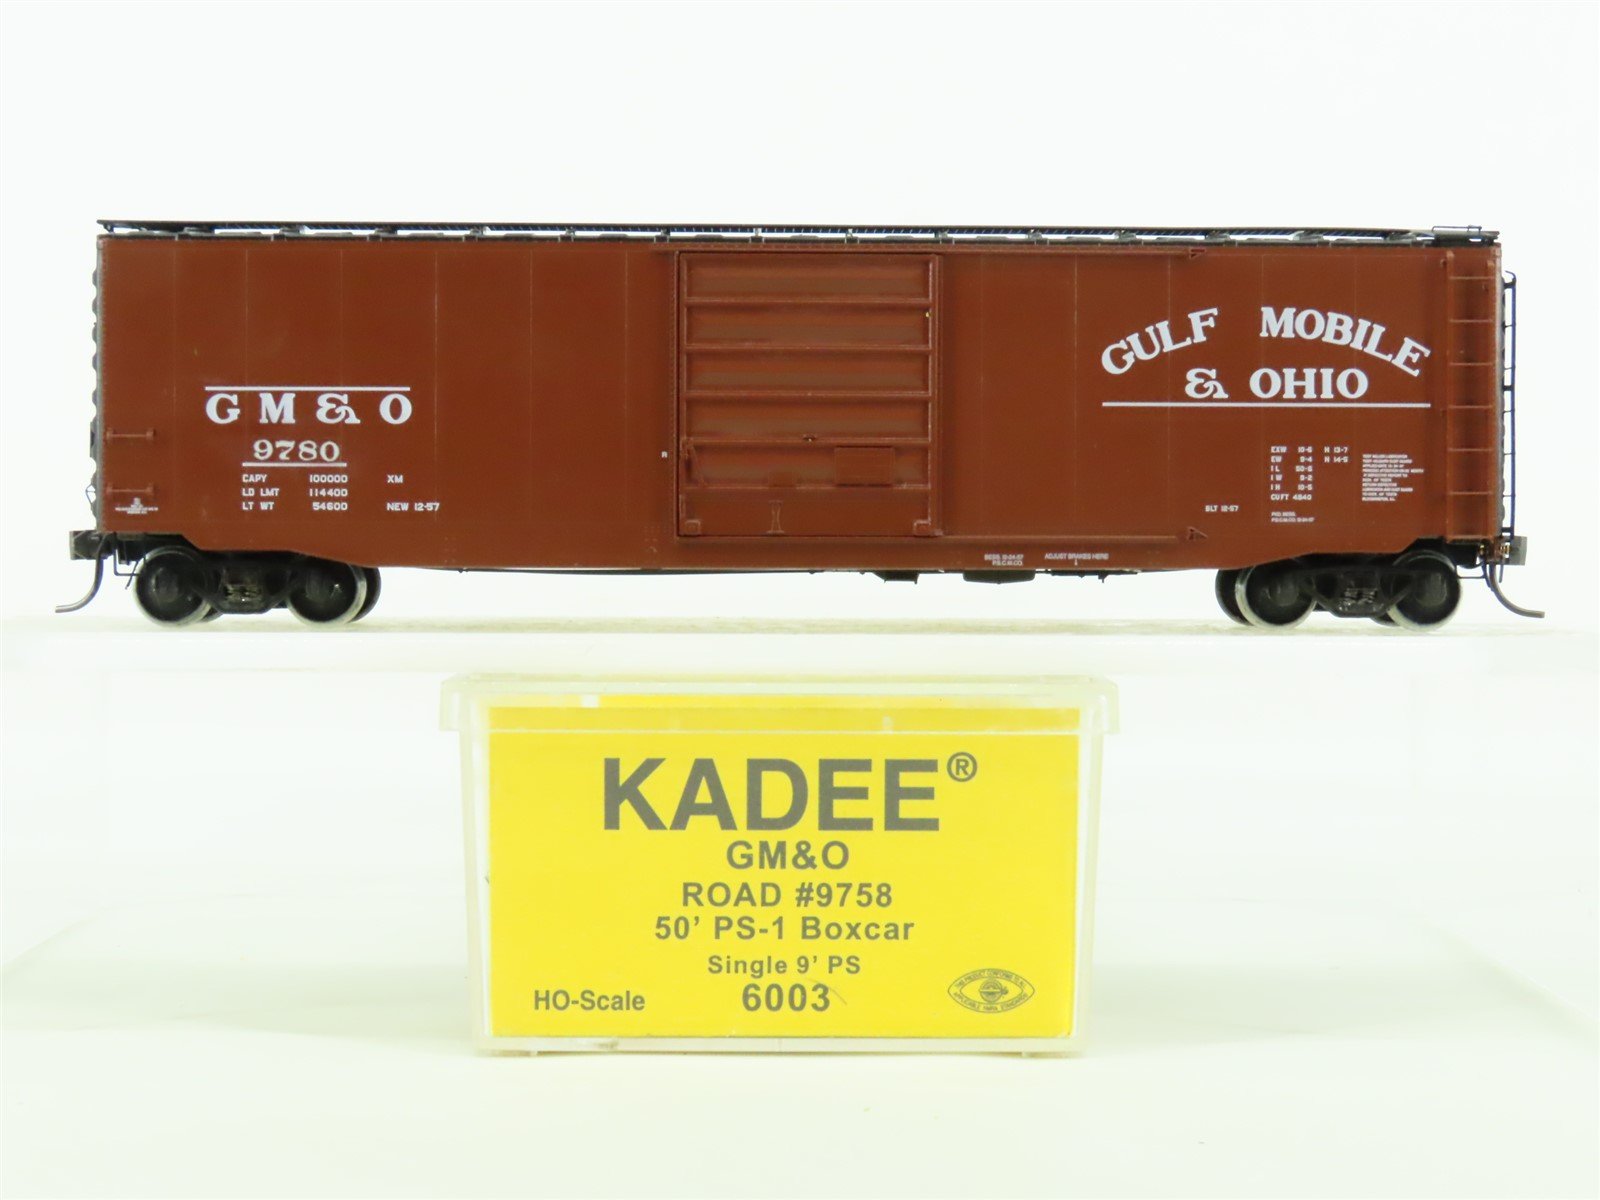 HO Scale Kadee #6003 GM&O Gulf Mobile & Ohio 50' Box Car #9758 - Custom